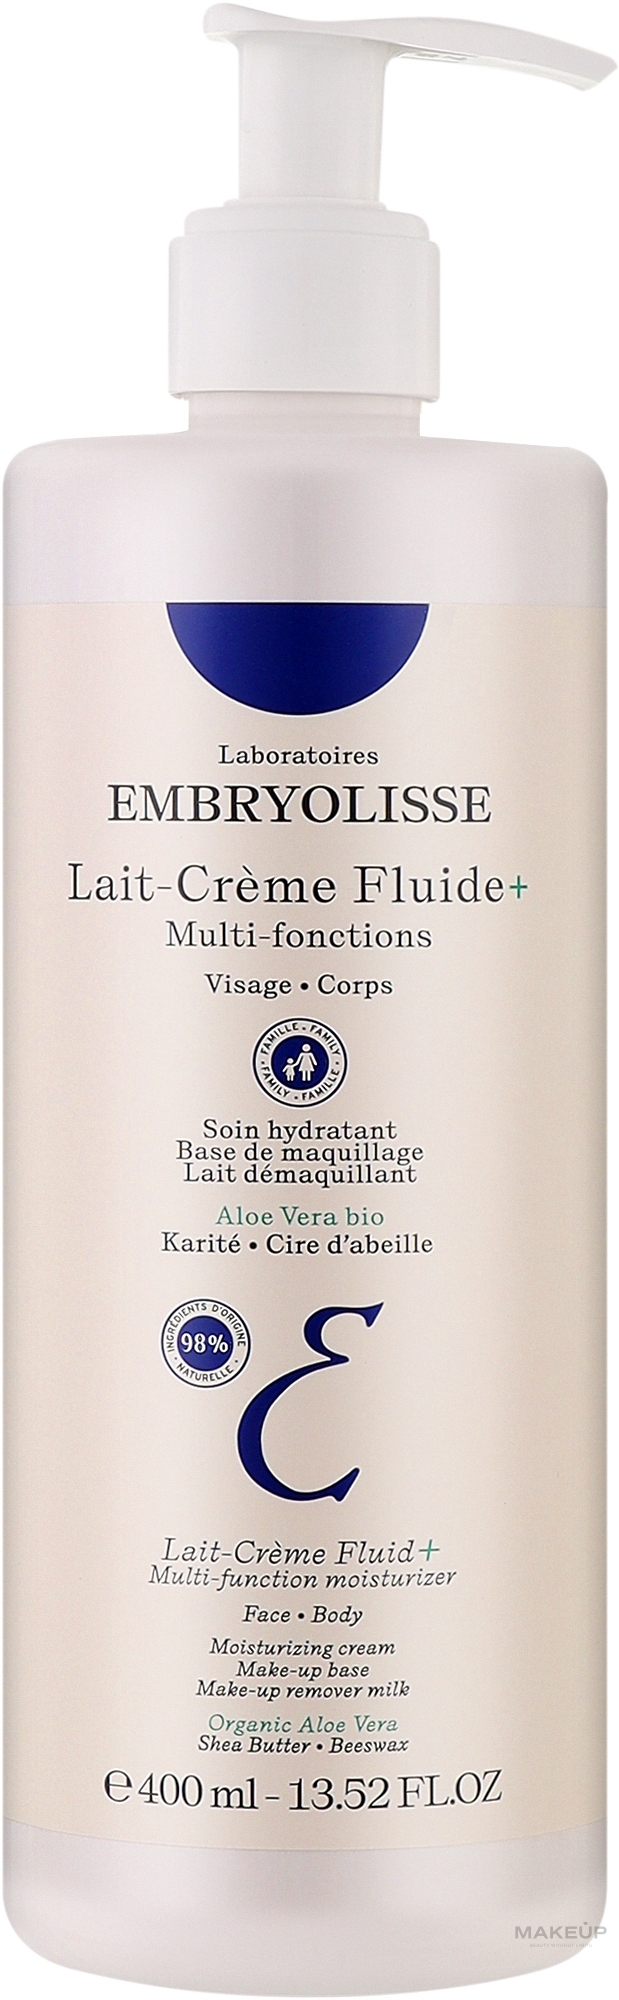 Зволожувальне молочко-крем для тіла - Embryolisse Laboratories Lait-Creme Fluide+ — фото 400ml